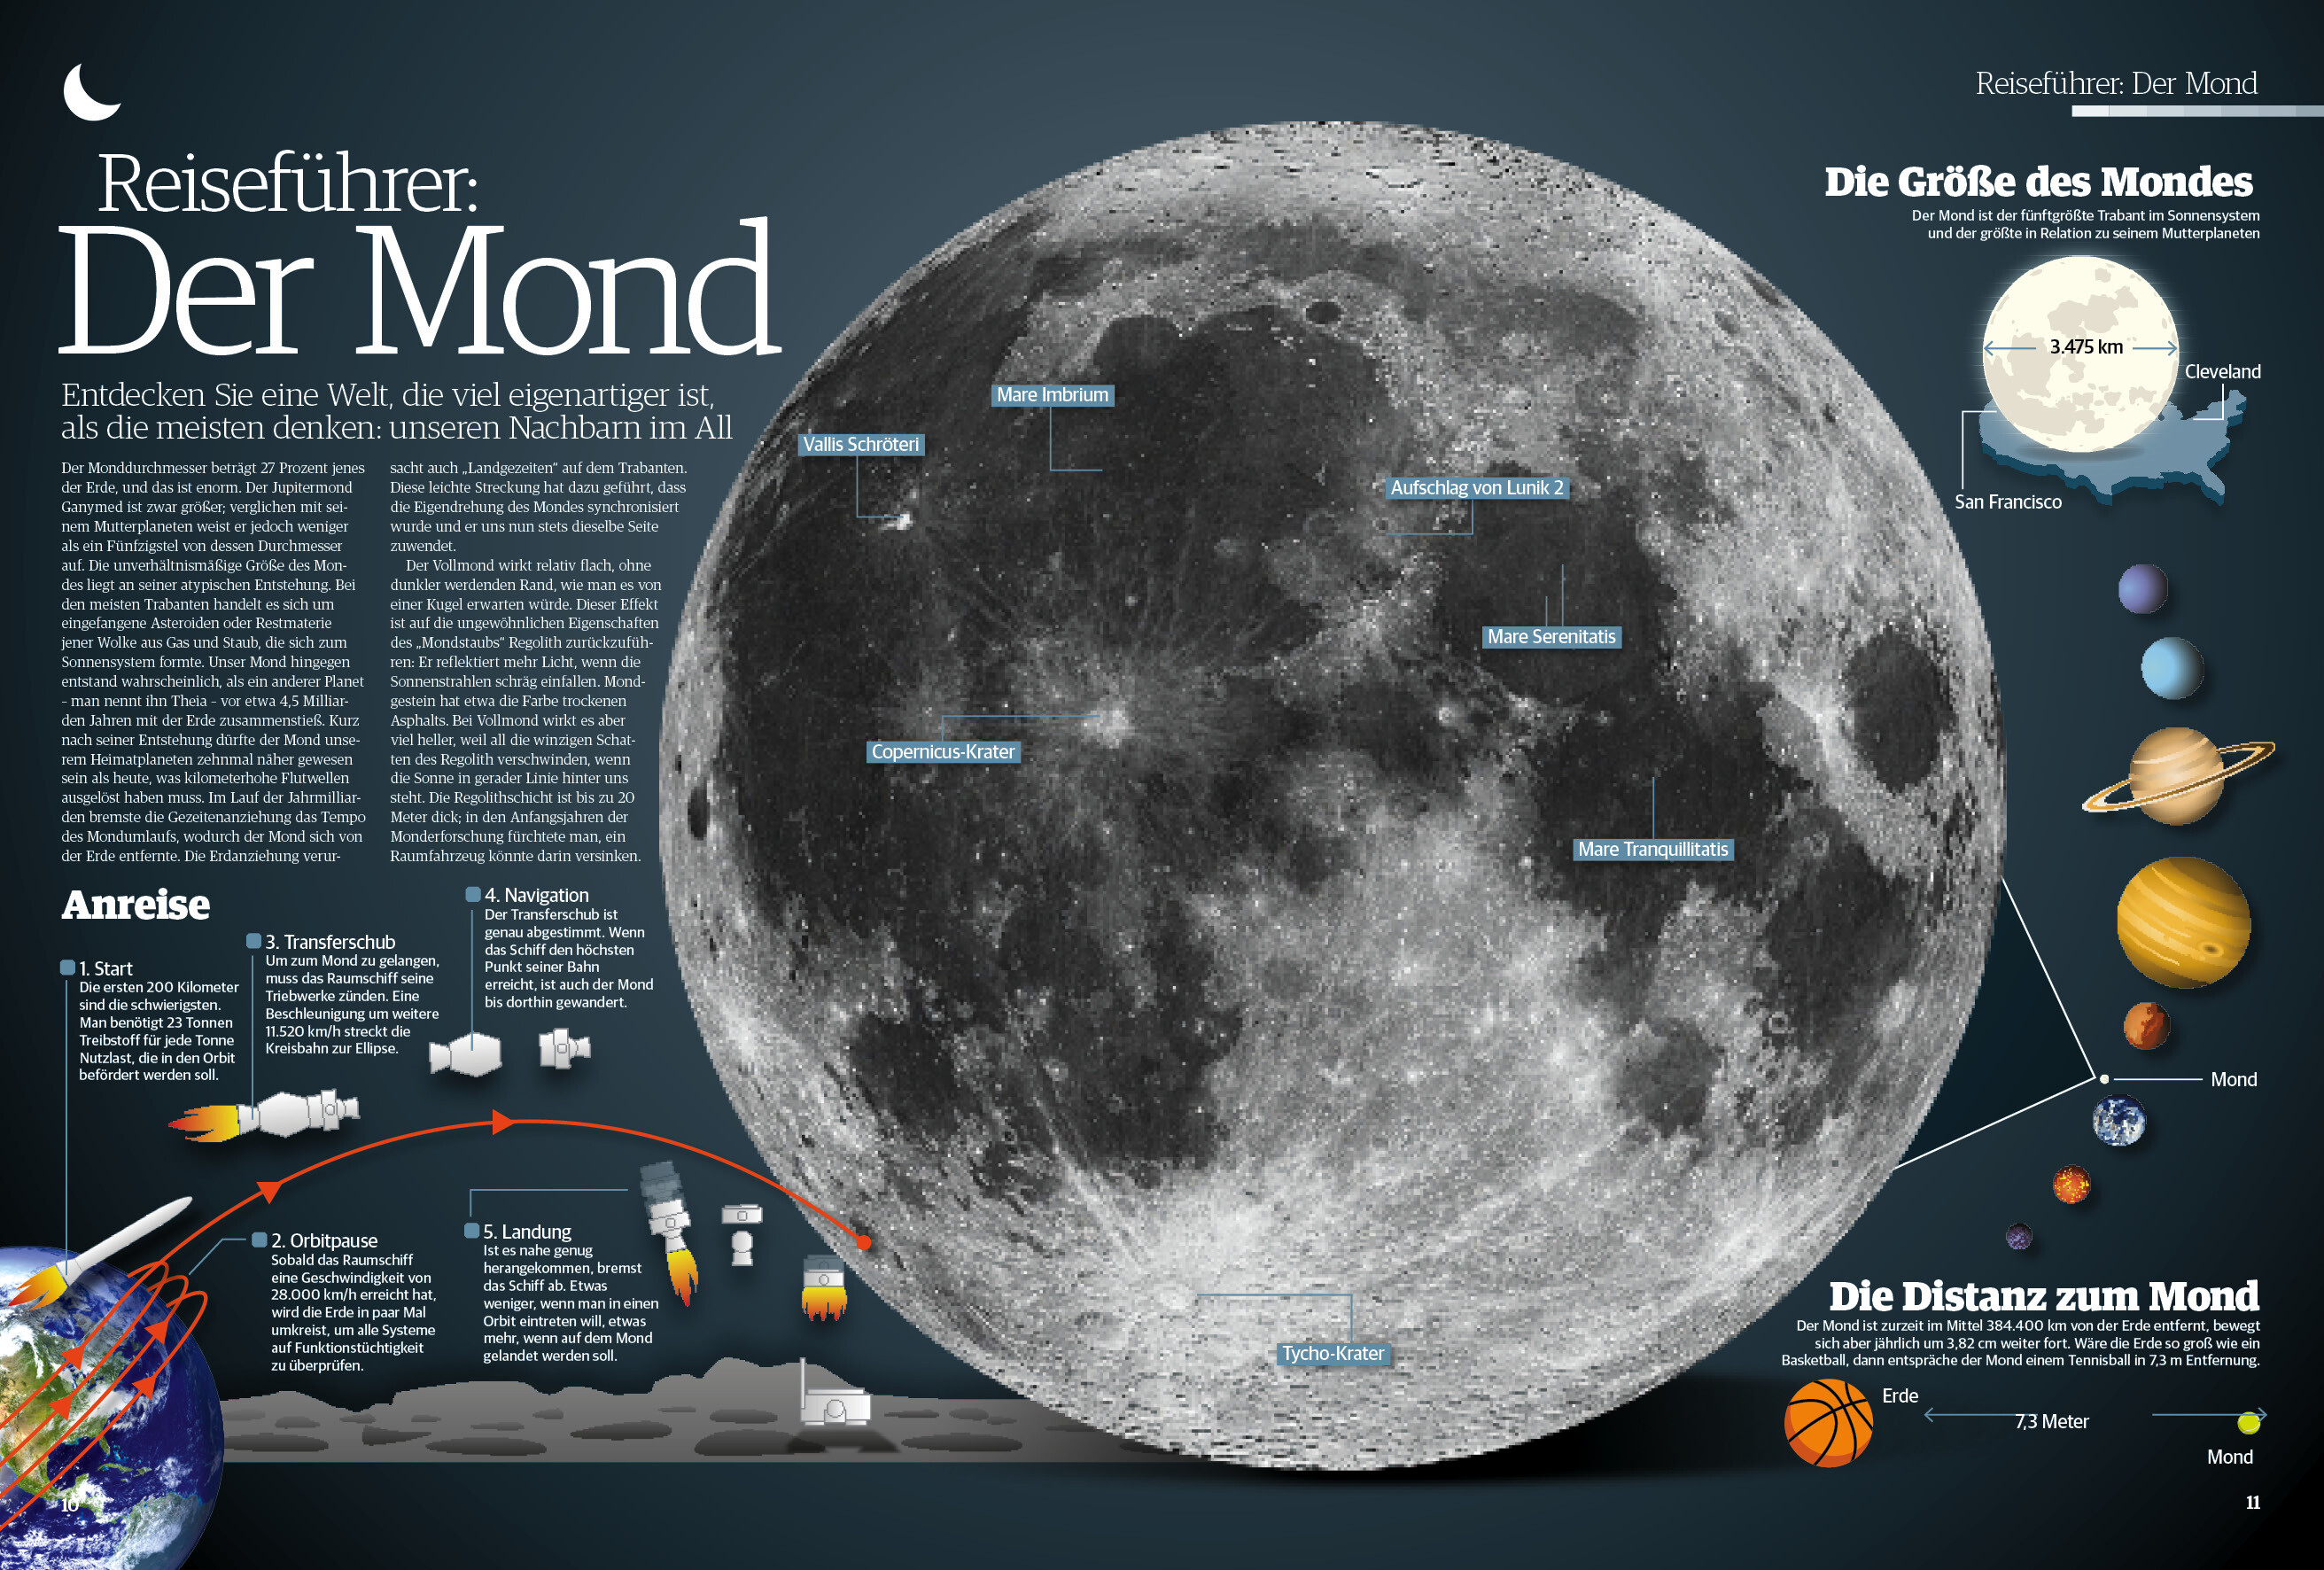 Space Sonderheft 50 Jahre Mondlandung